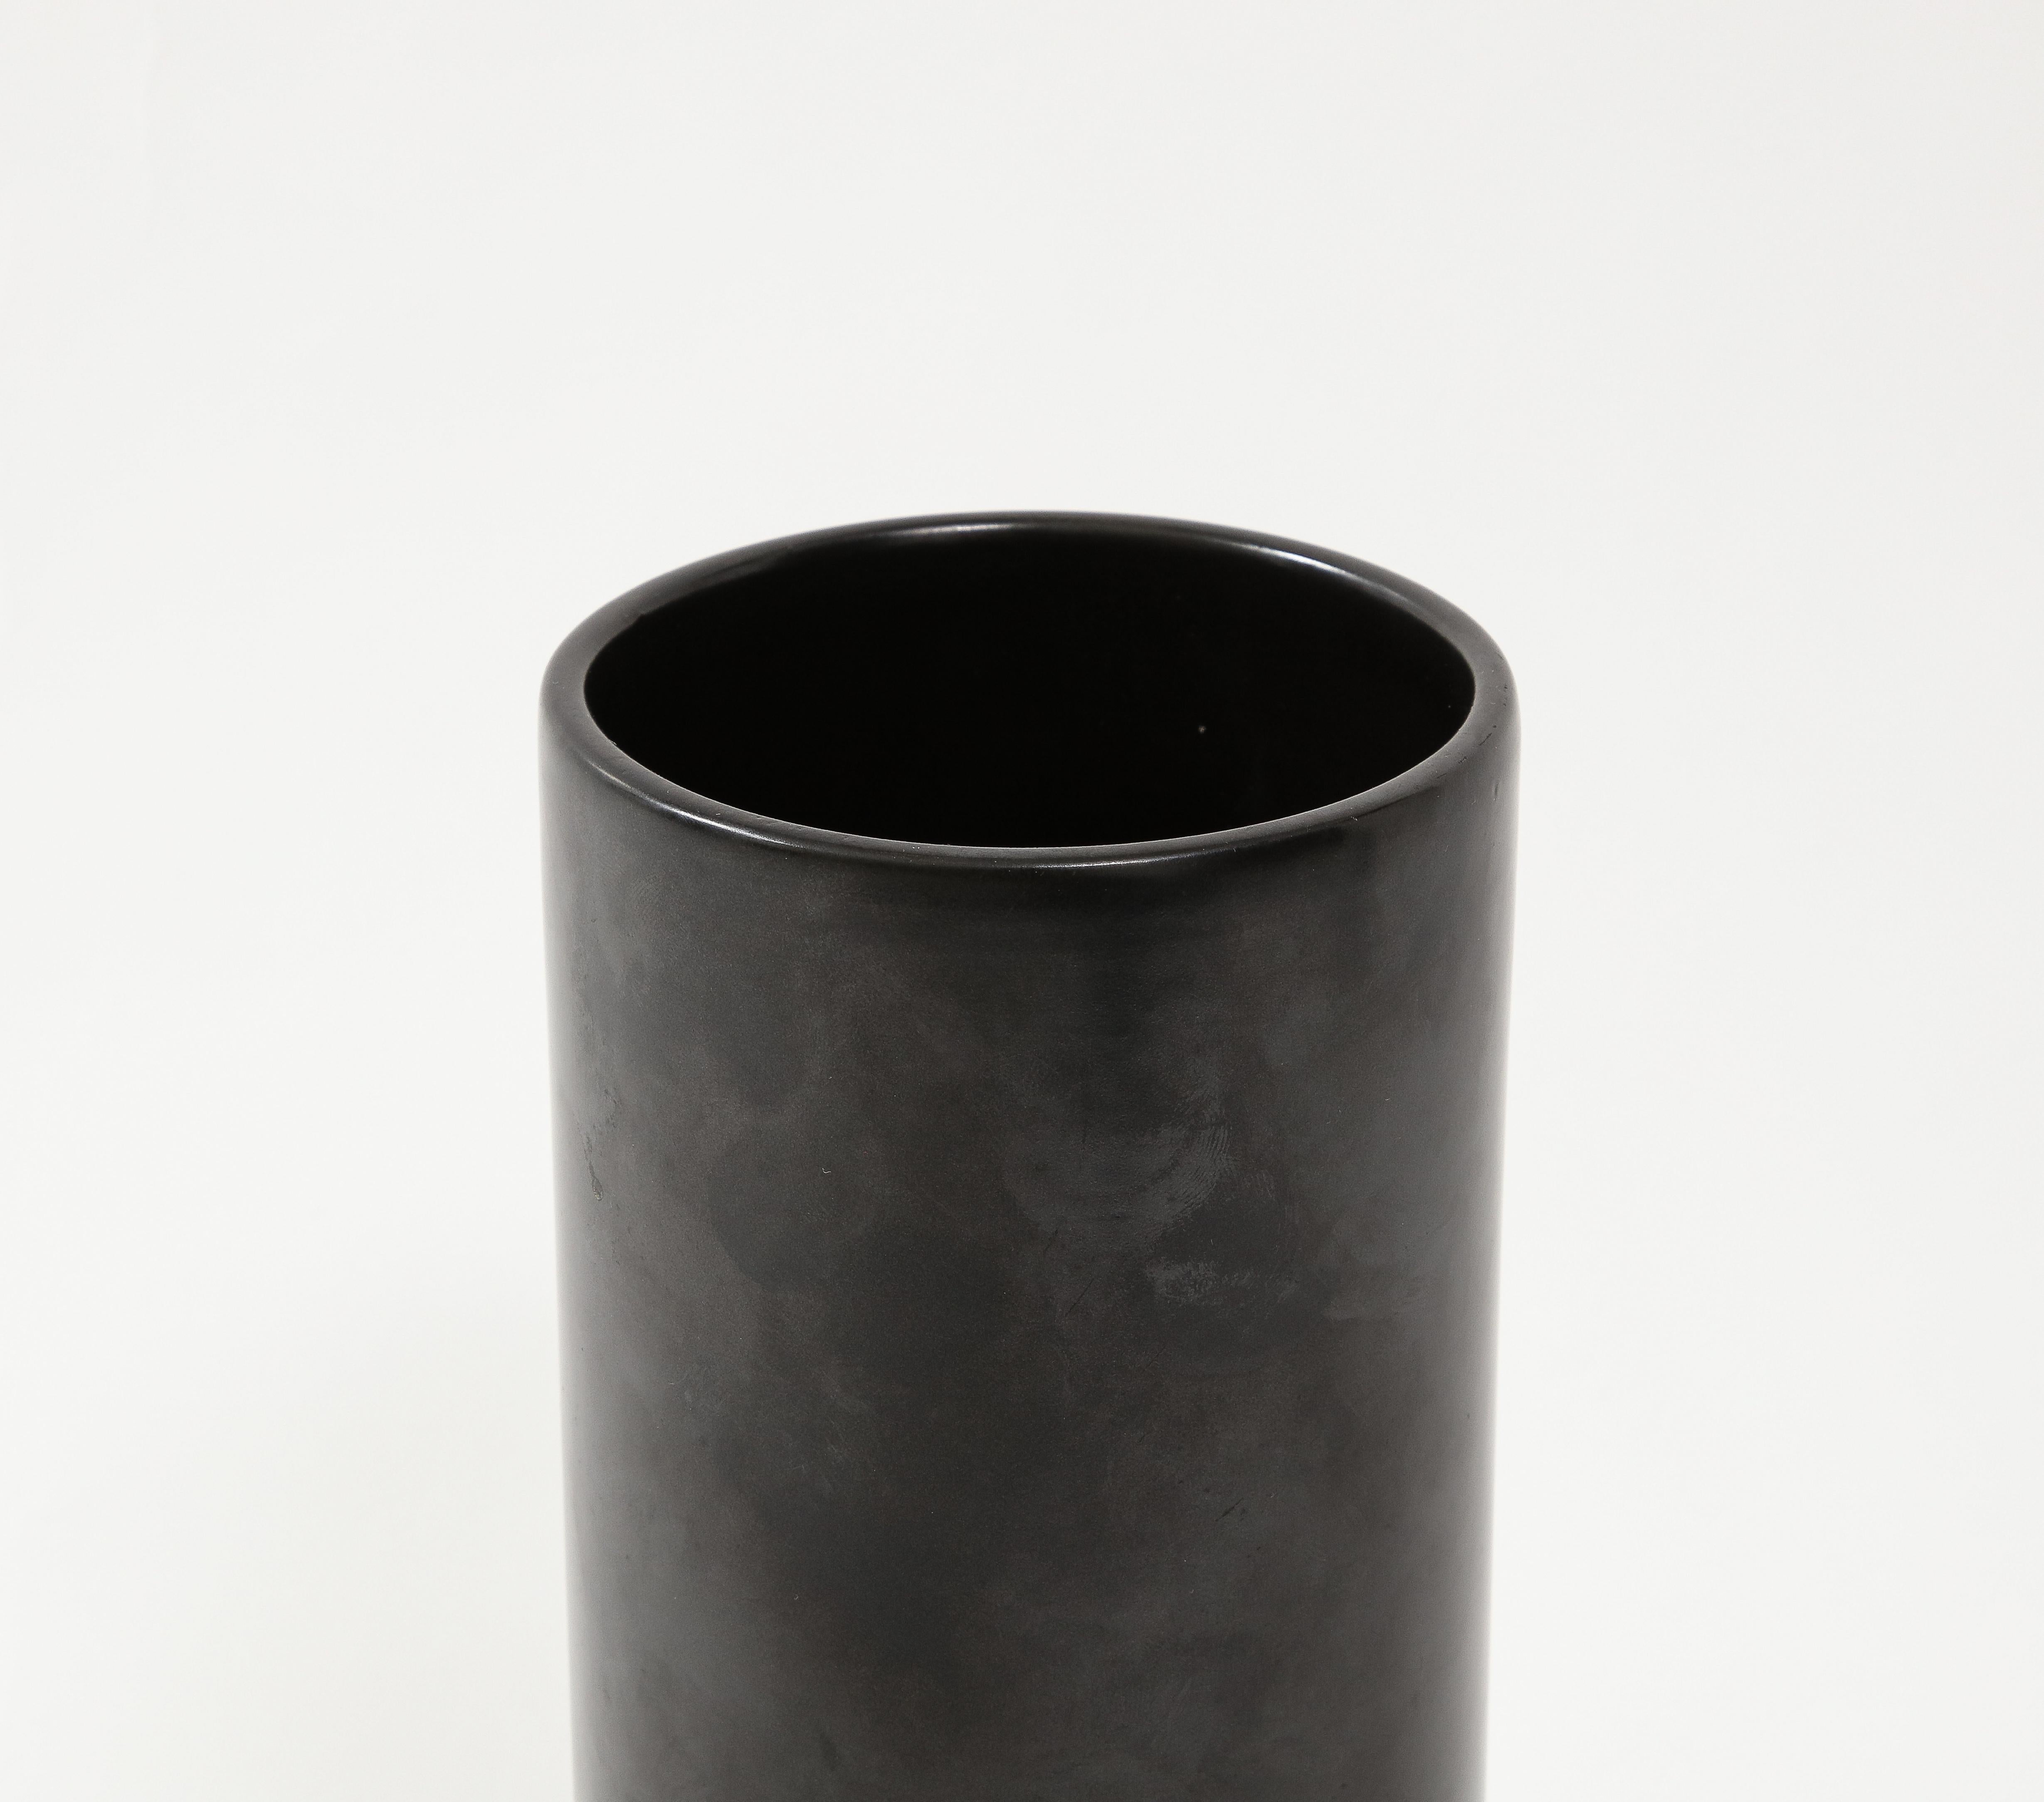 Ceramic Large Georges Jouve Style Black Matte Cylinder Vase, France, c. 1950's For Sale